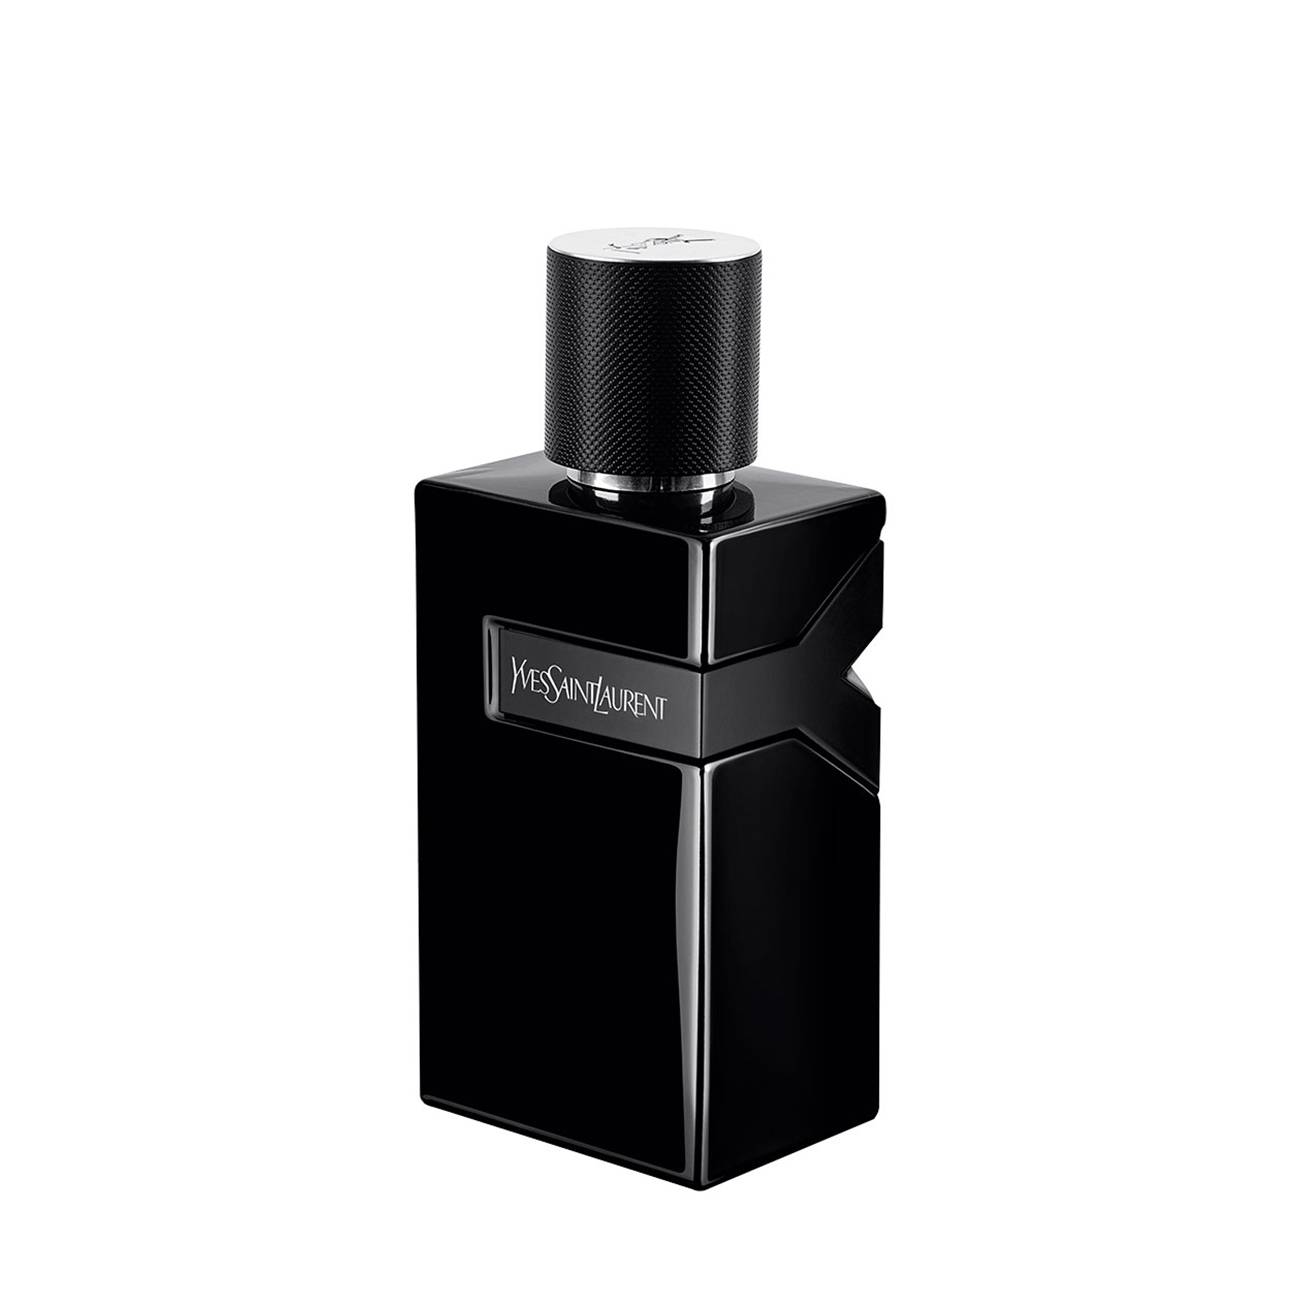 Y Le Parfum 100 Ml - Yves Saint Laurent